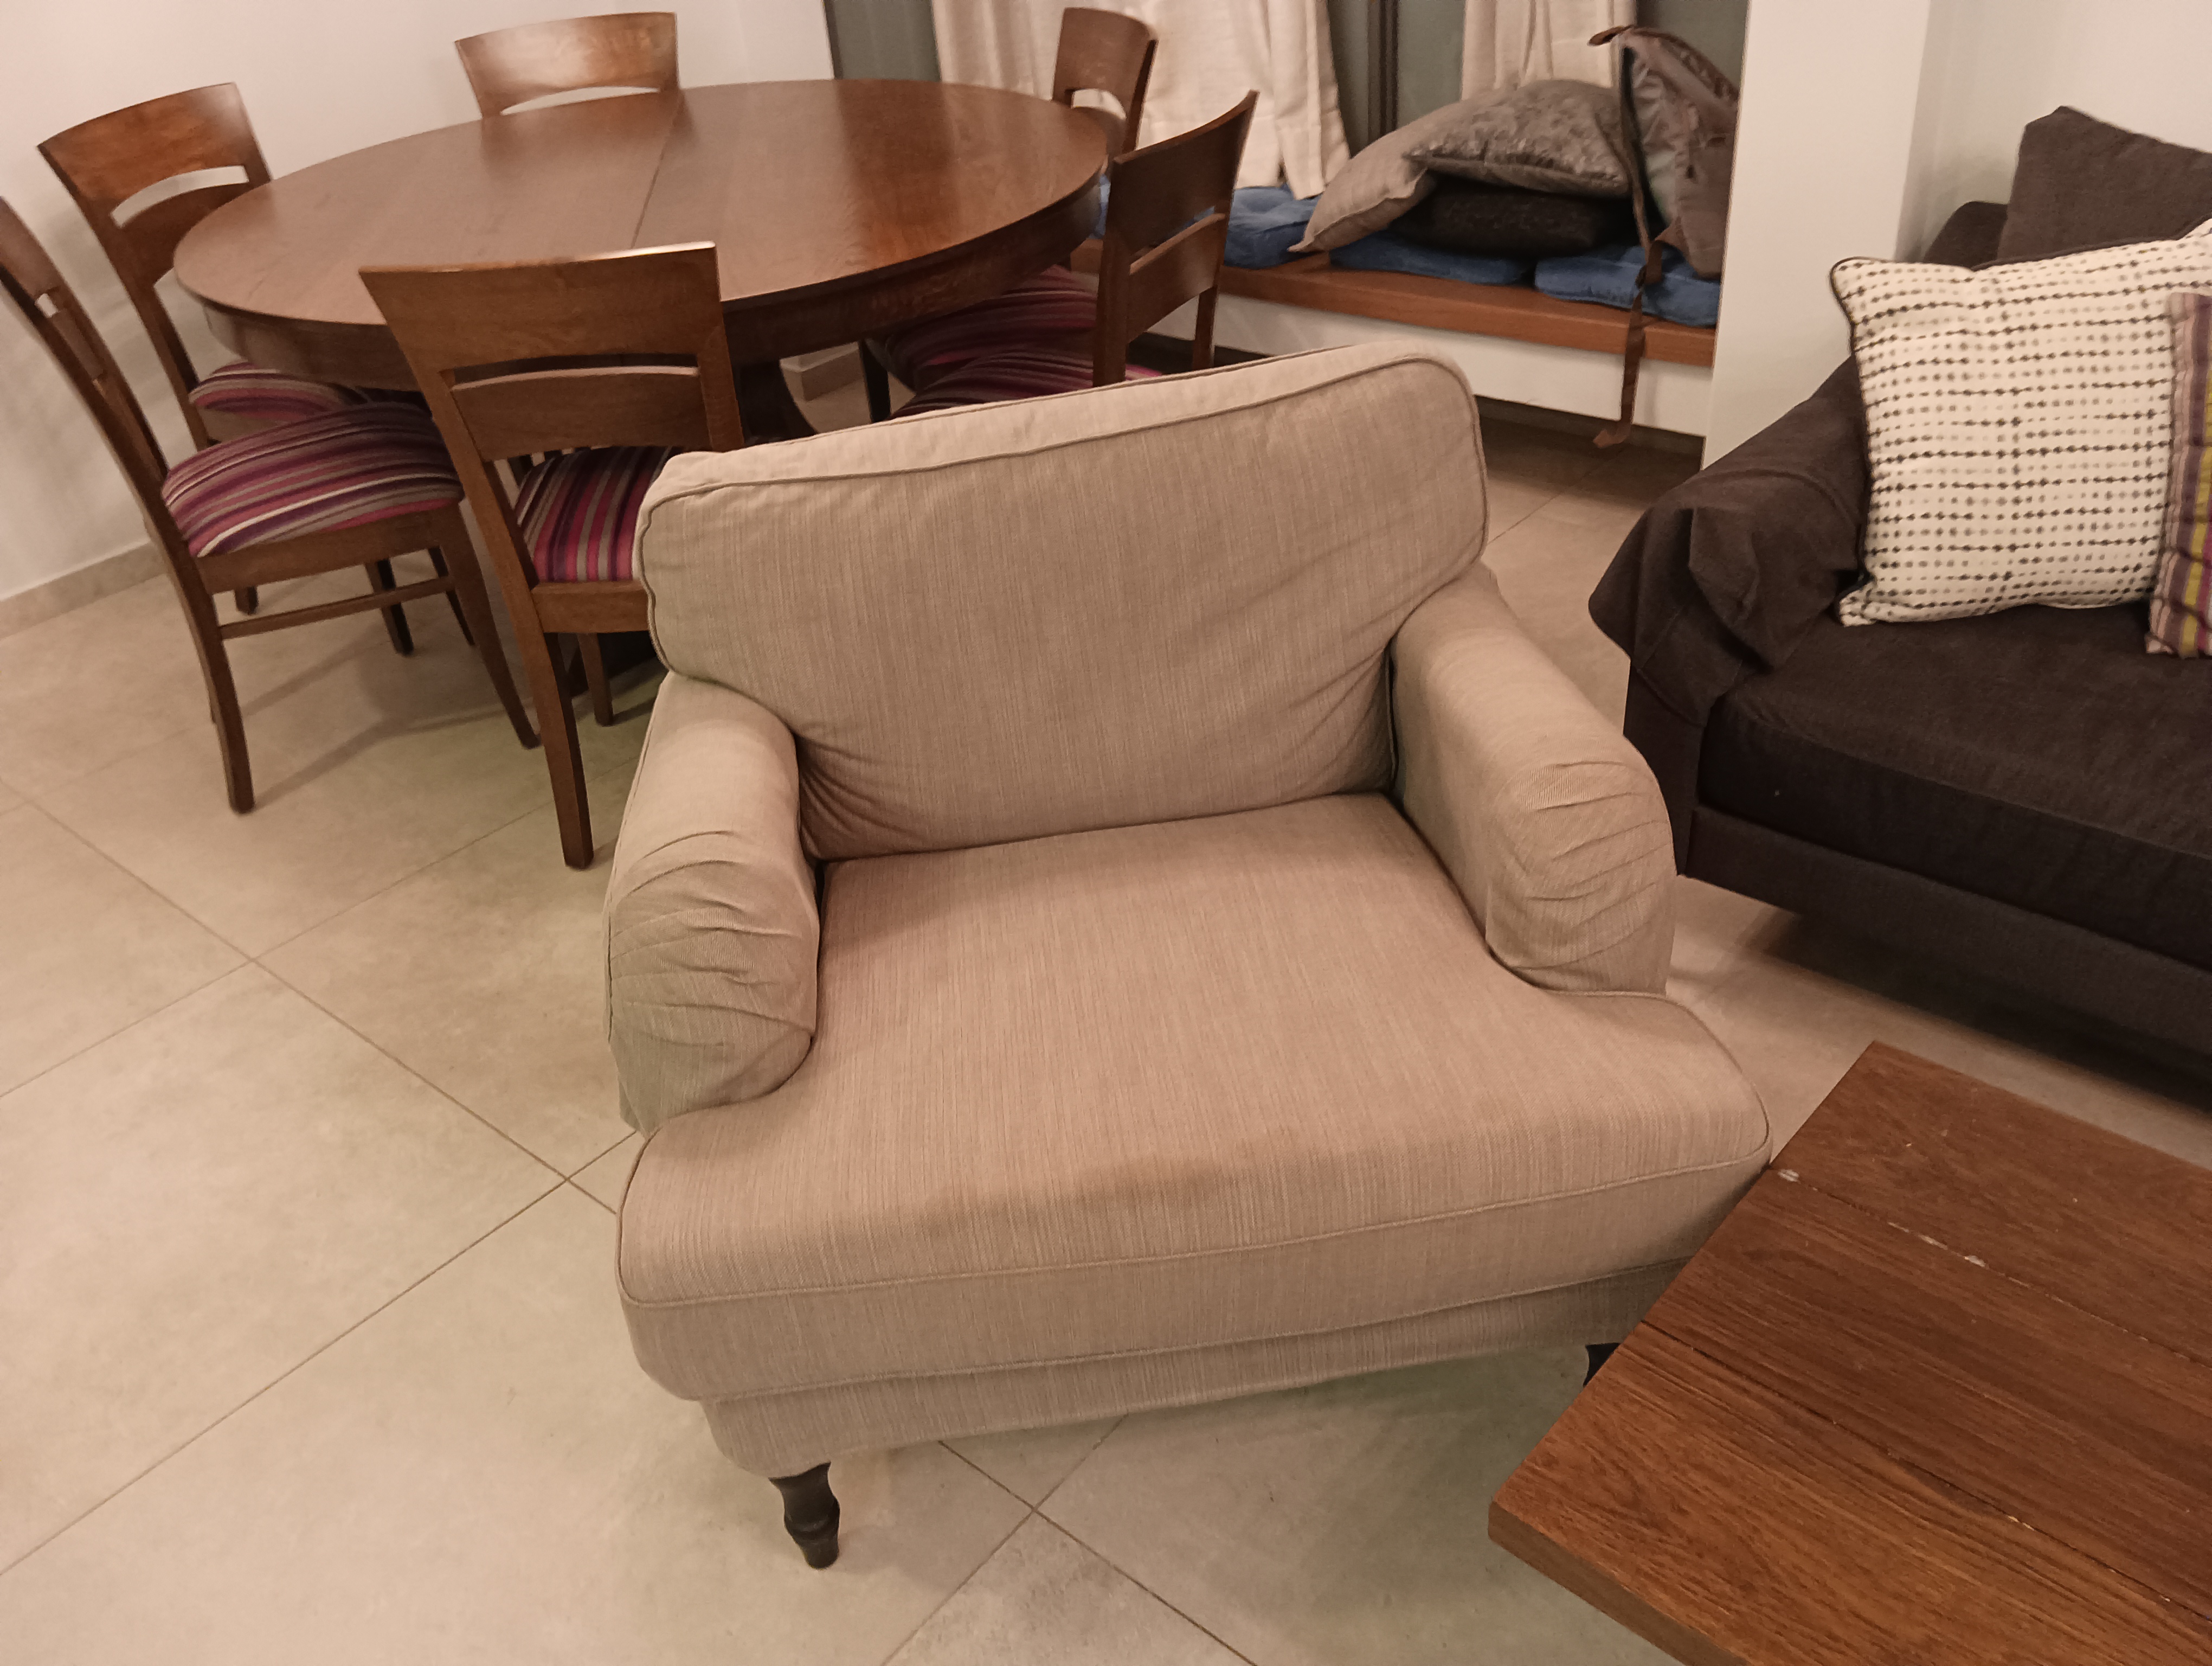 תמונה 1 ,מגוון רהיטים למכירה בתל אביב ריהוט  שונות